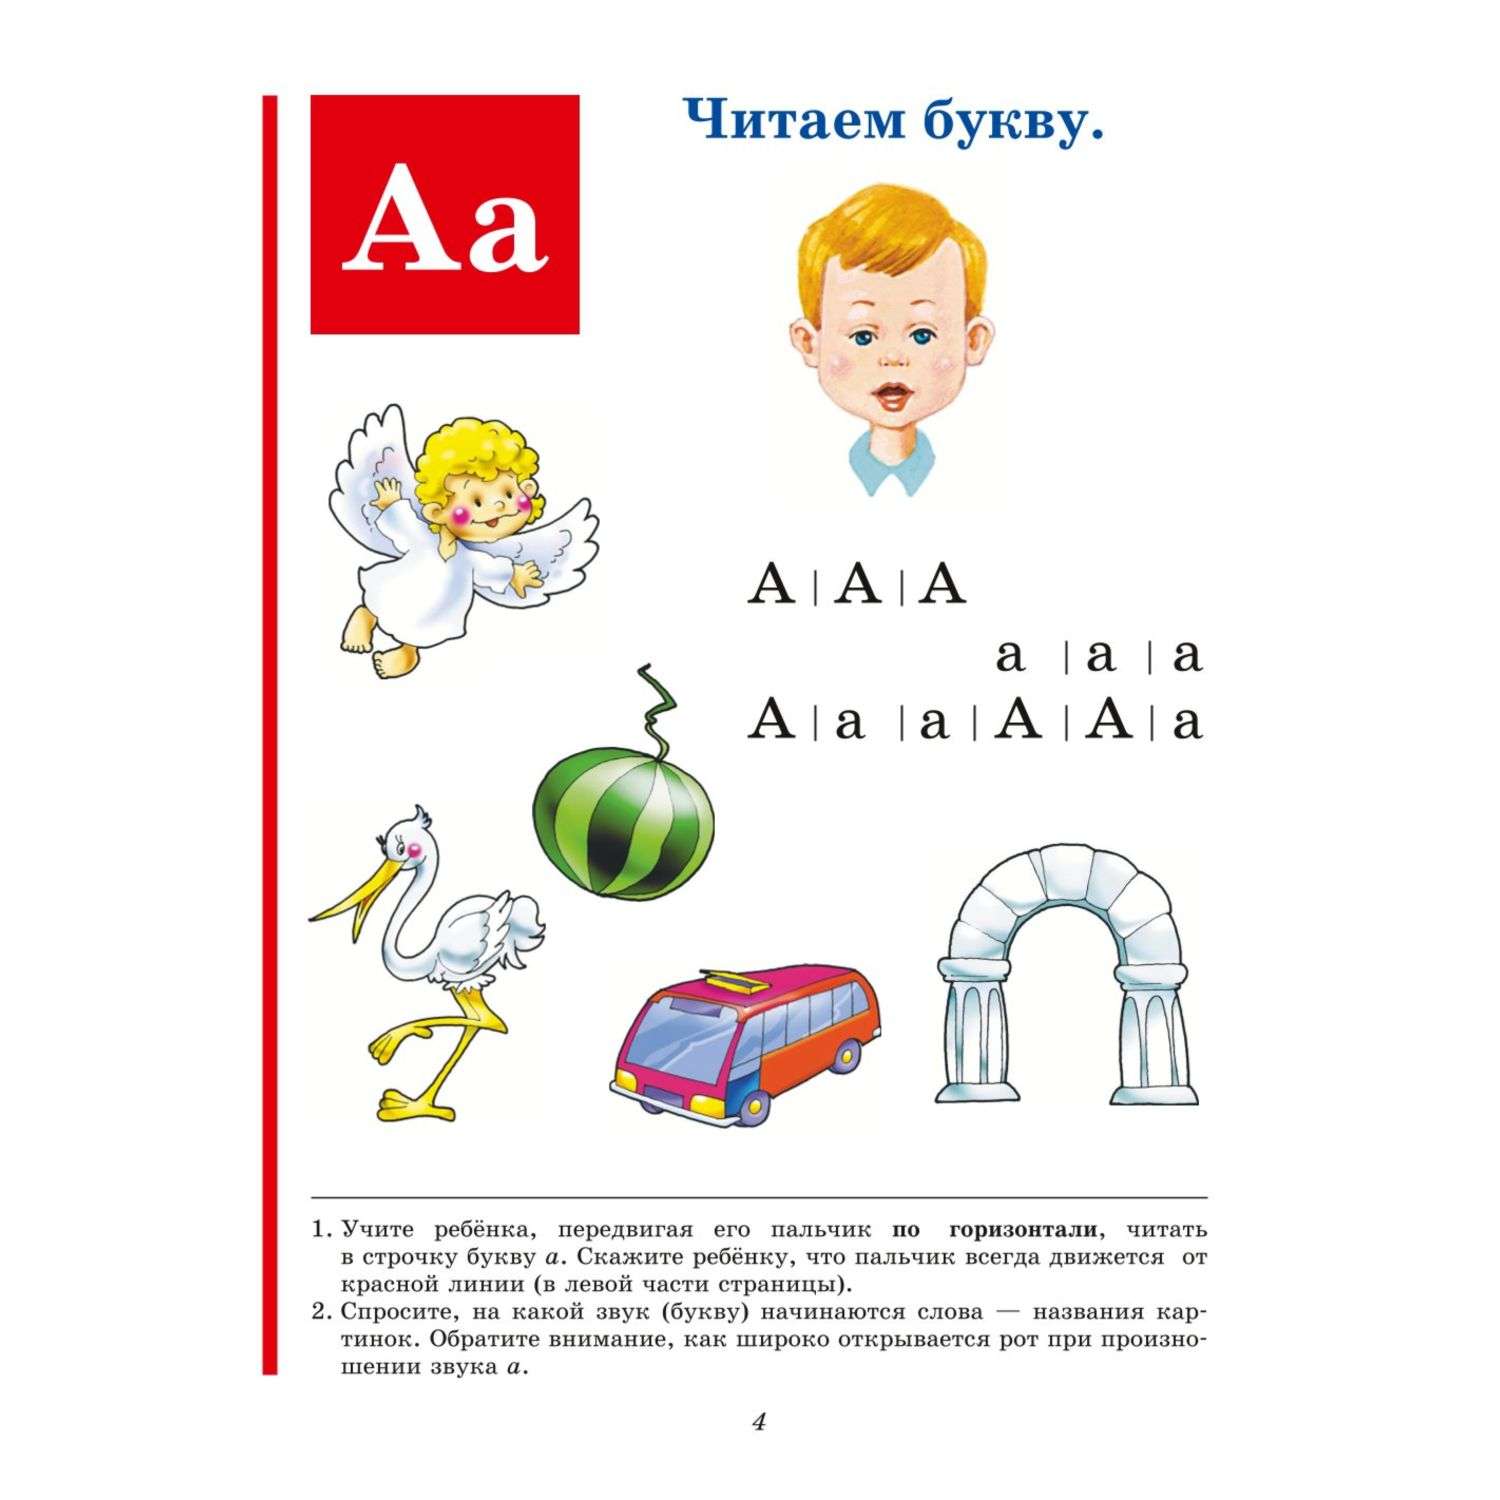 «То что видишь нечасто сканворд 8 букв?» — Яндекс Кью